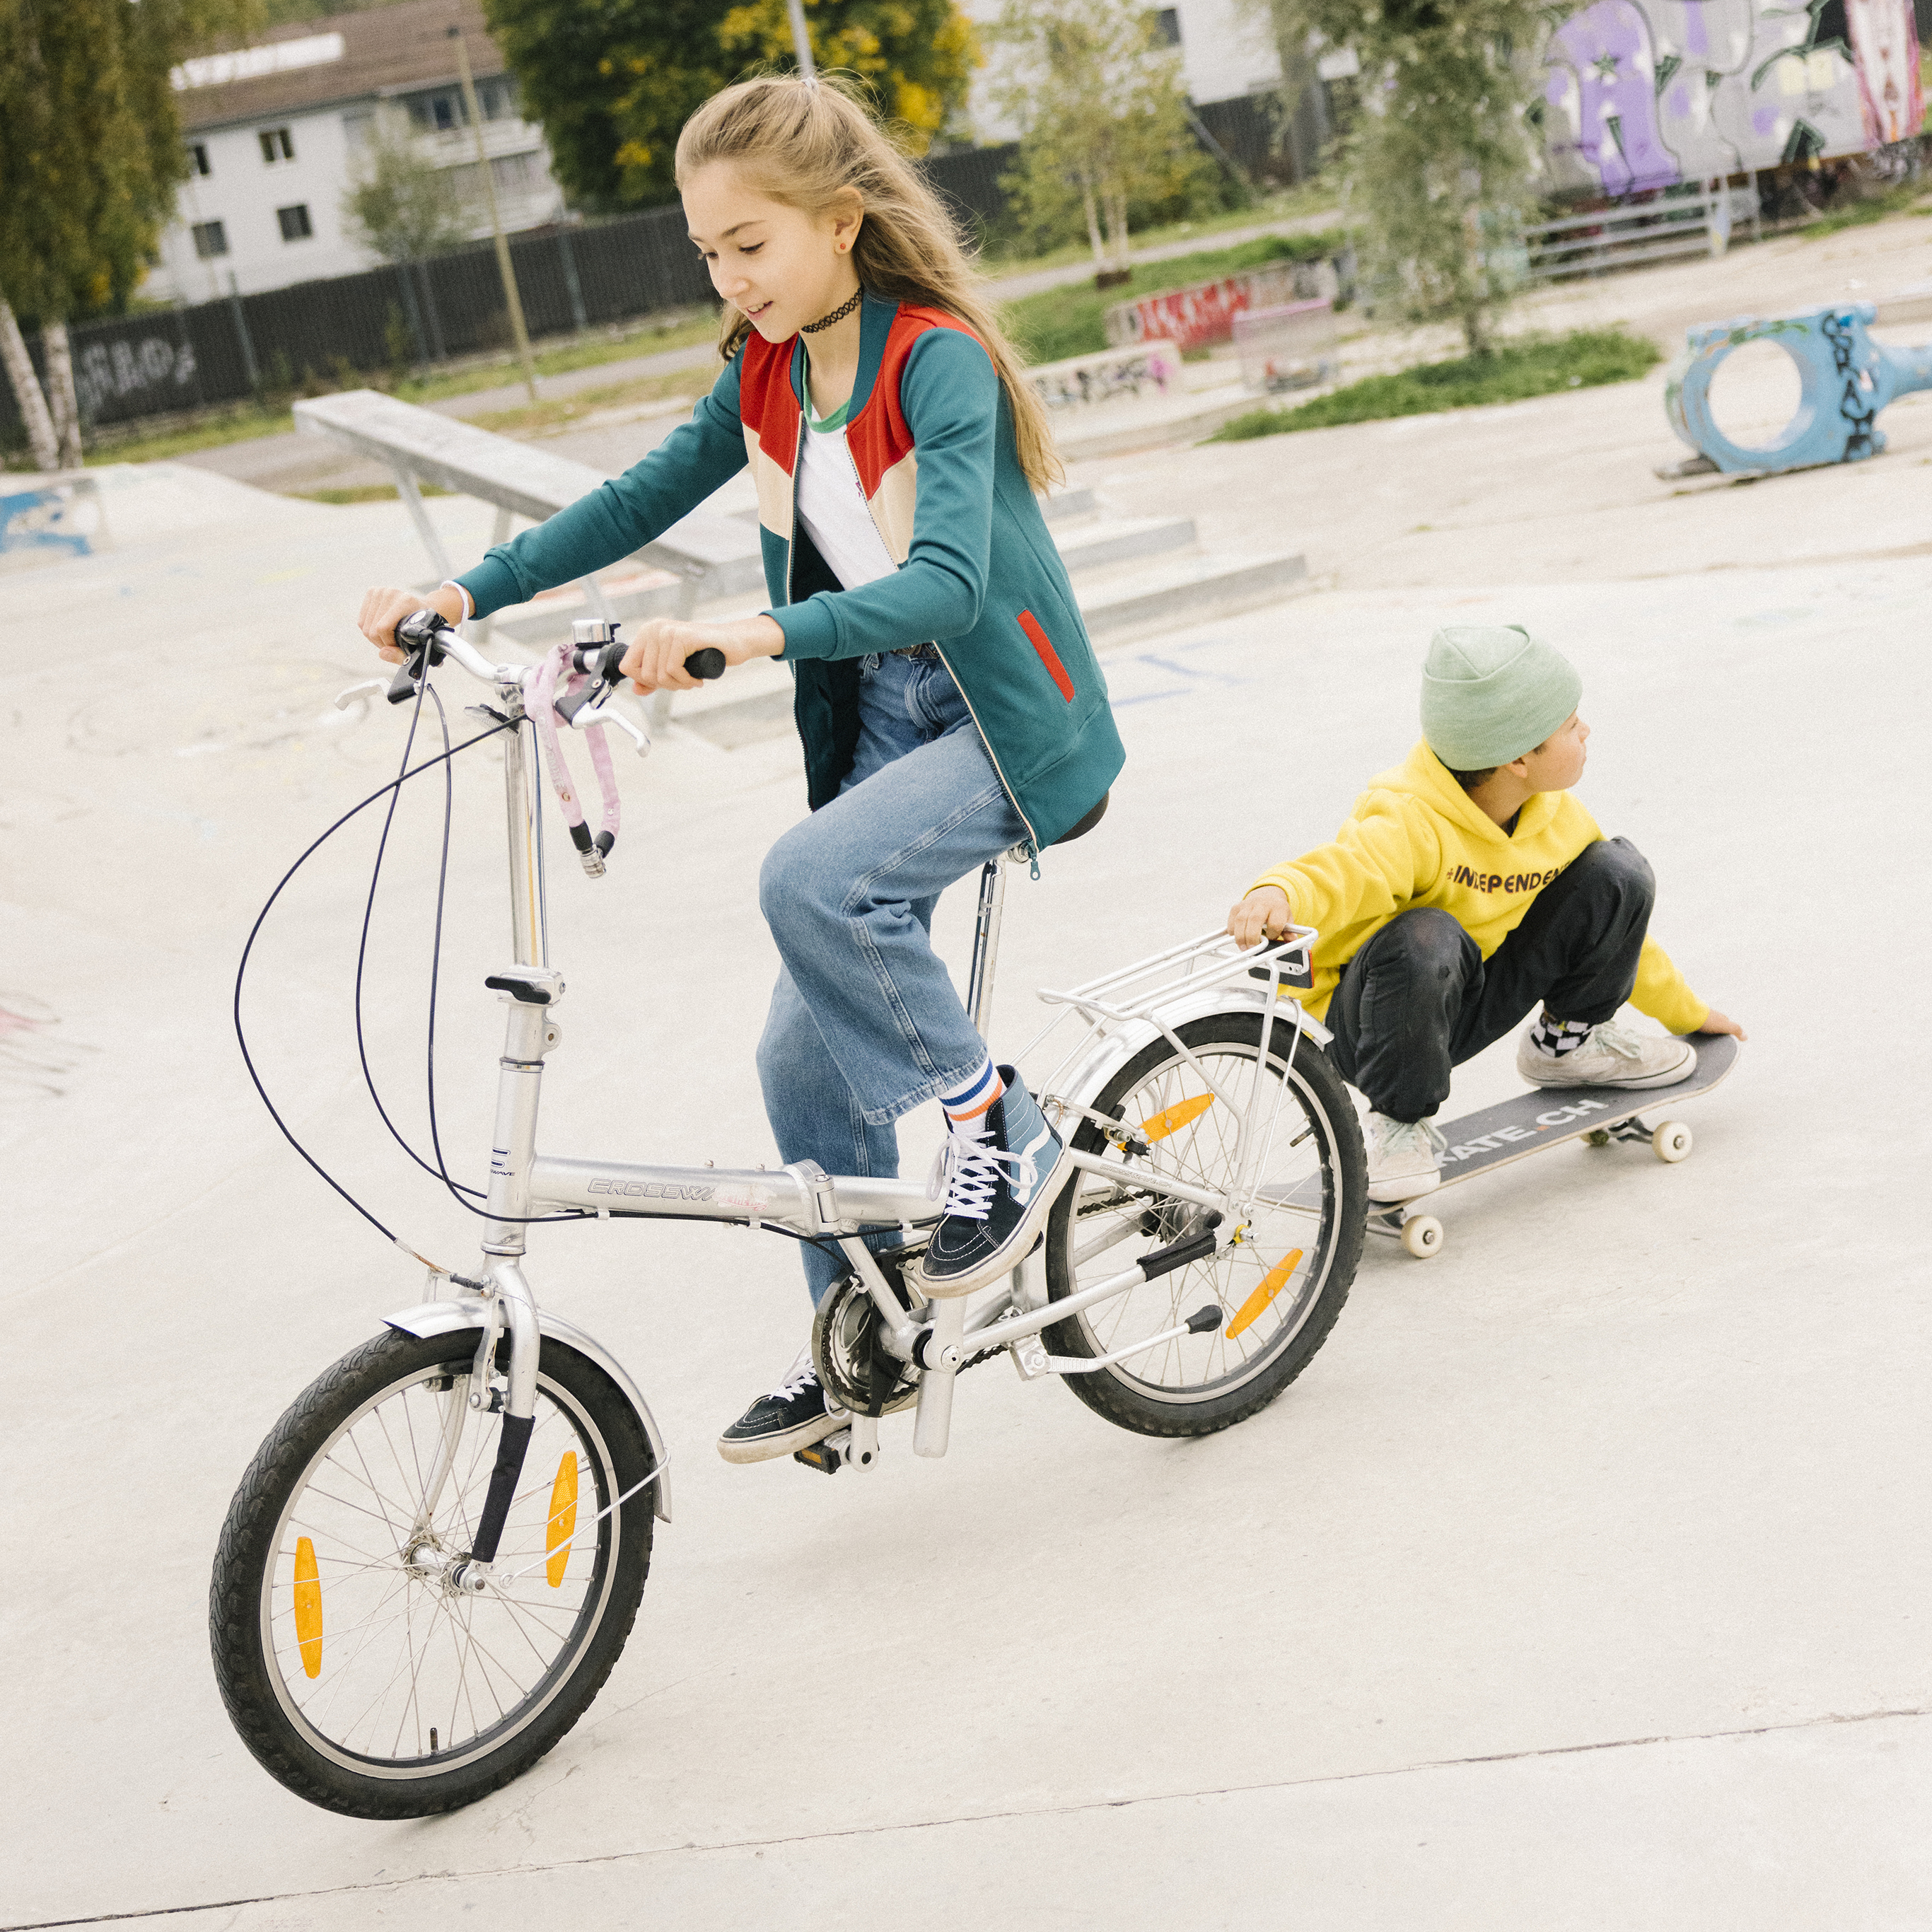 Une adolescente pédale sur son vélo, tandis qu’un adolescent accroupi sur son skateboard se tient au porte-bagage et regarde en arrière. 